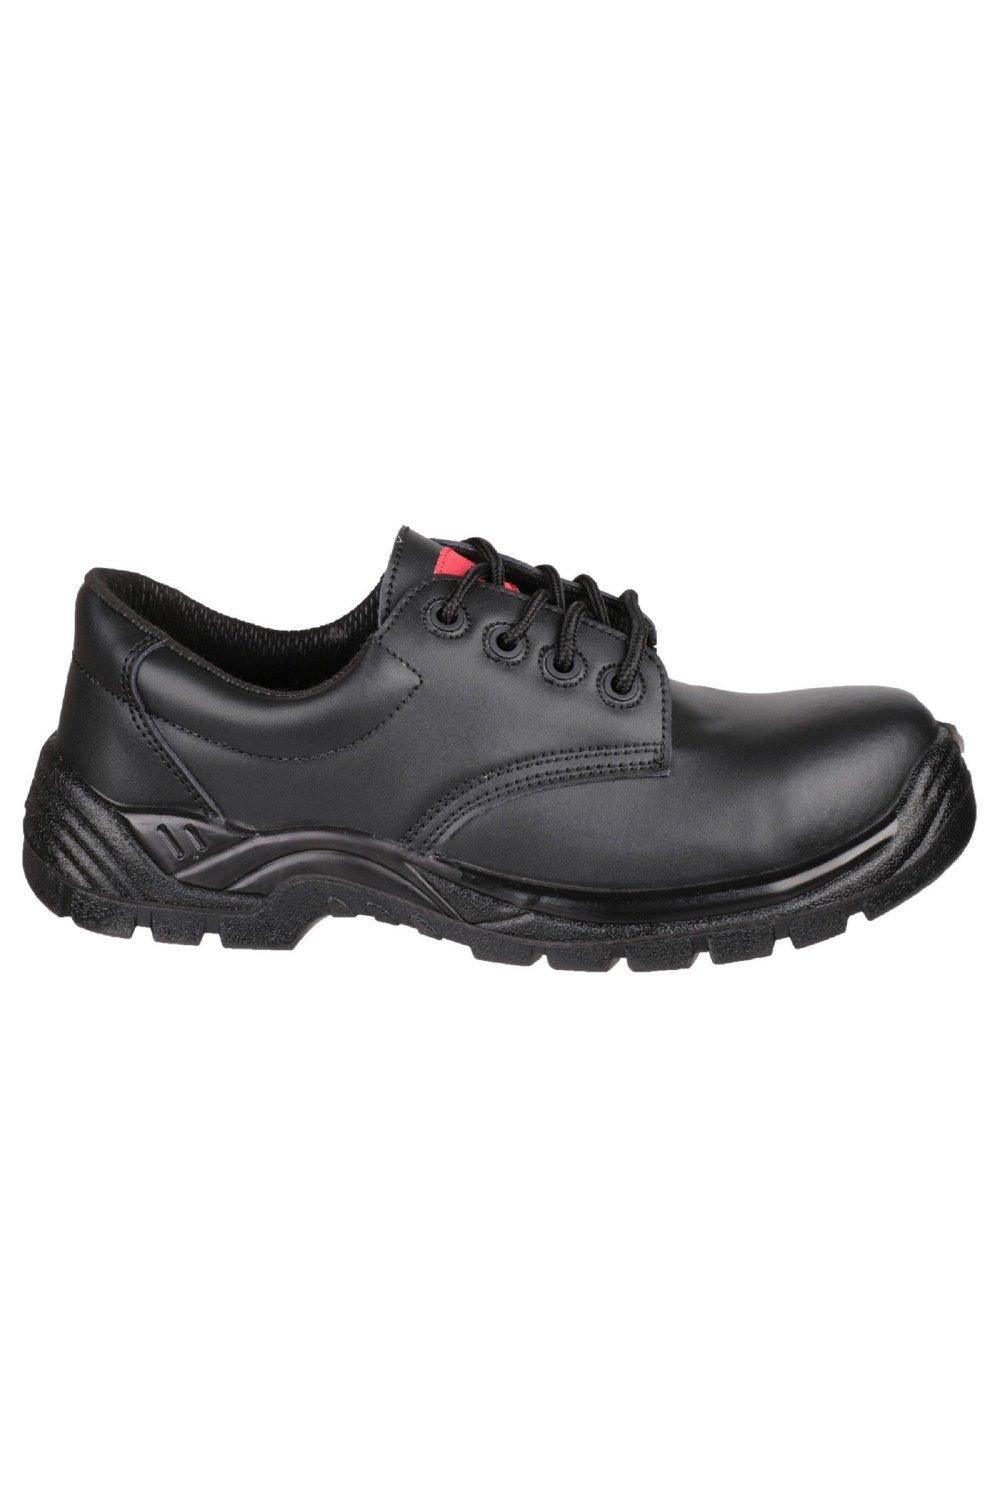 FS311C Композитная защитная обувь S3 SRC Centek, черный мужская женская рабочая защитная обувь с кевларовой межподошвой красный